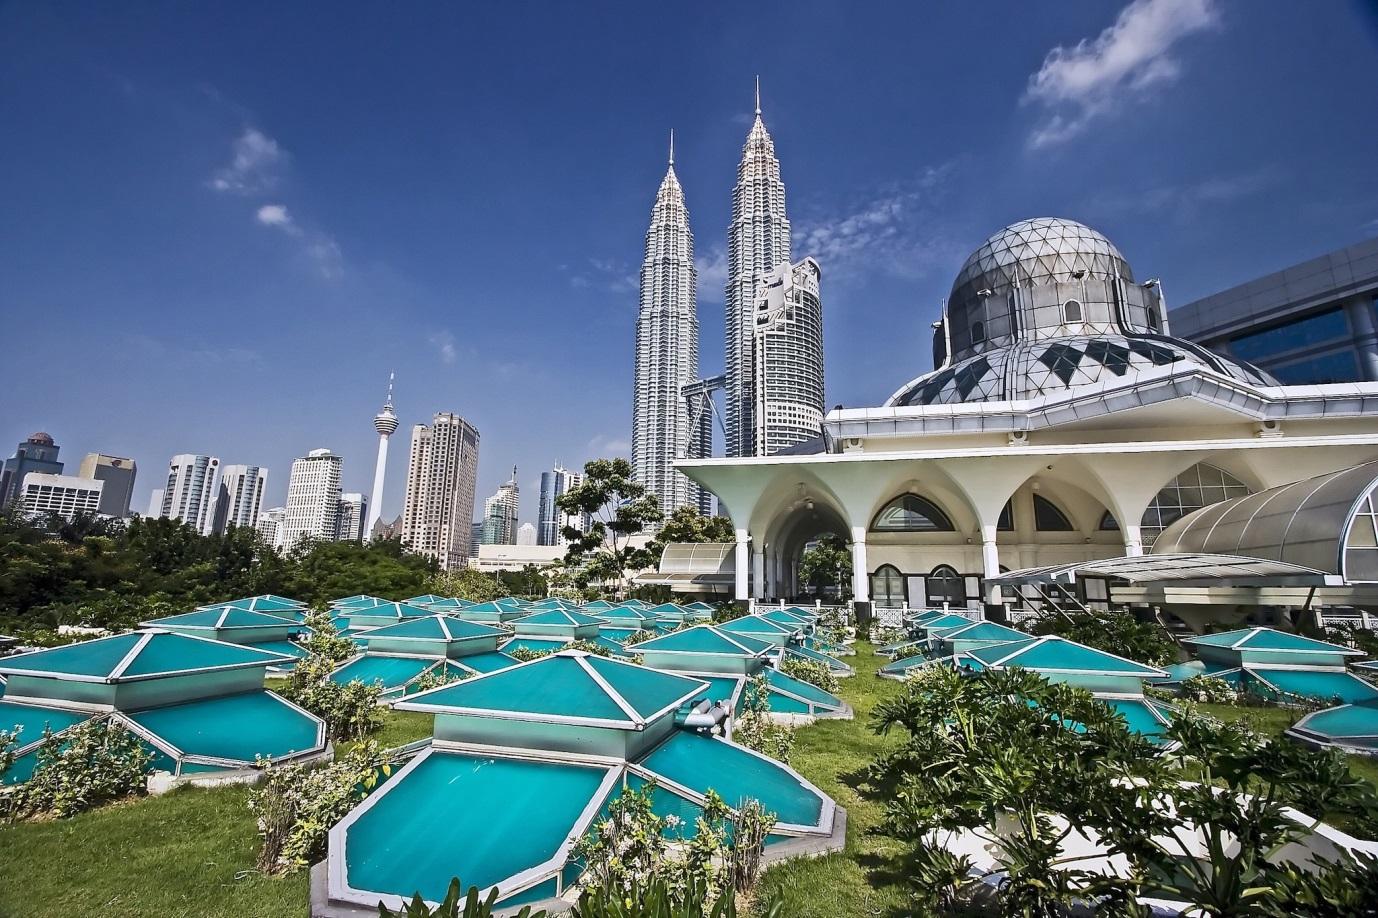 Visit Kuala Lumpur cruise port in Malaysia with Cunard